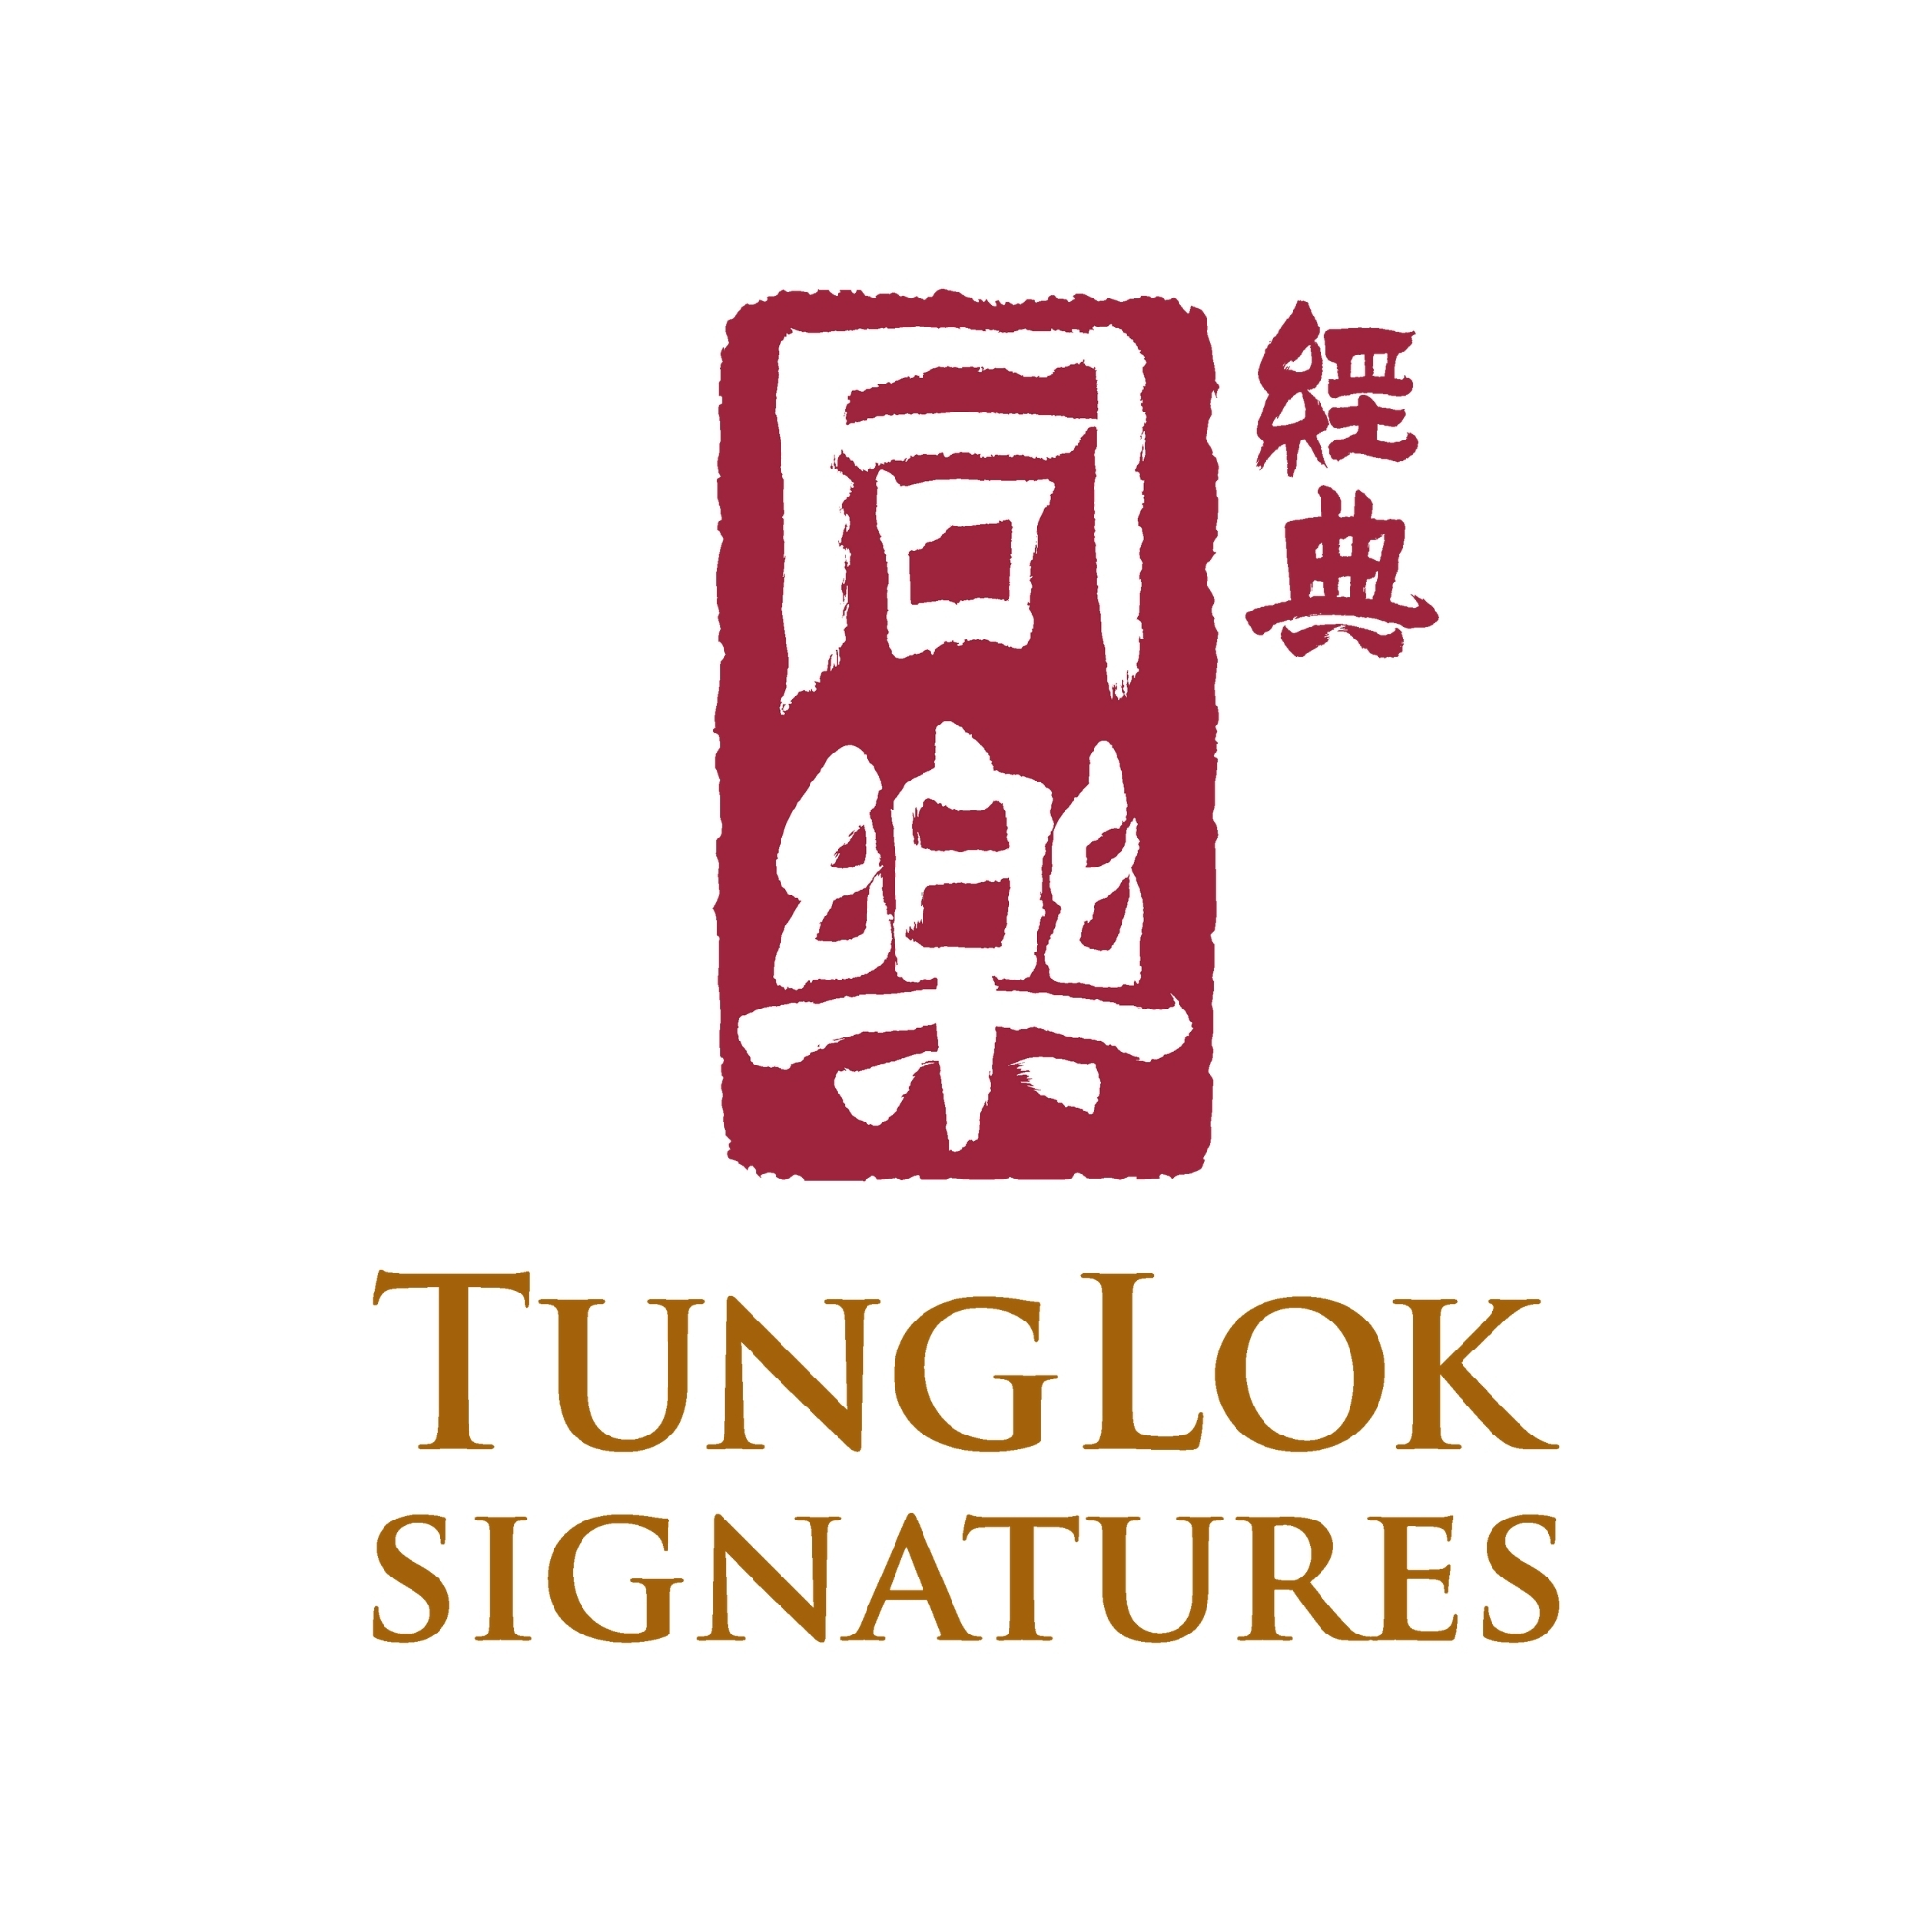 TungLok Signatures